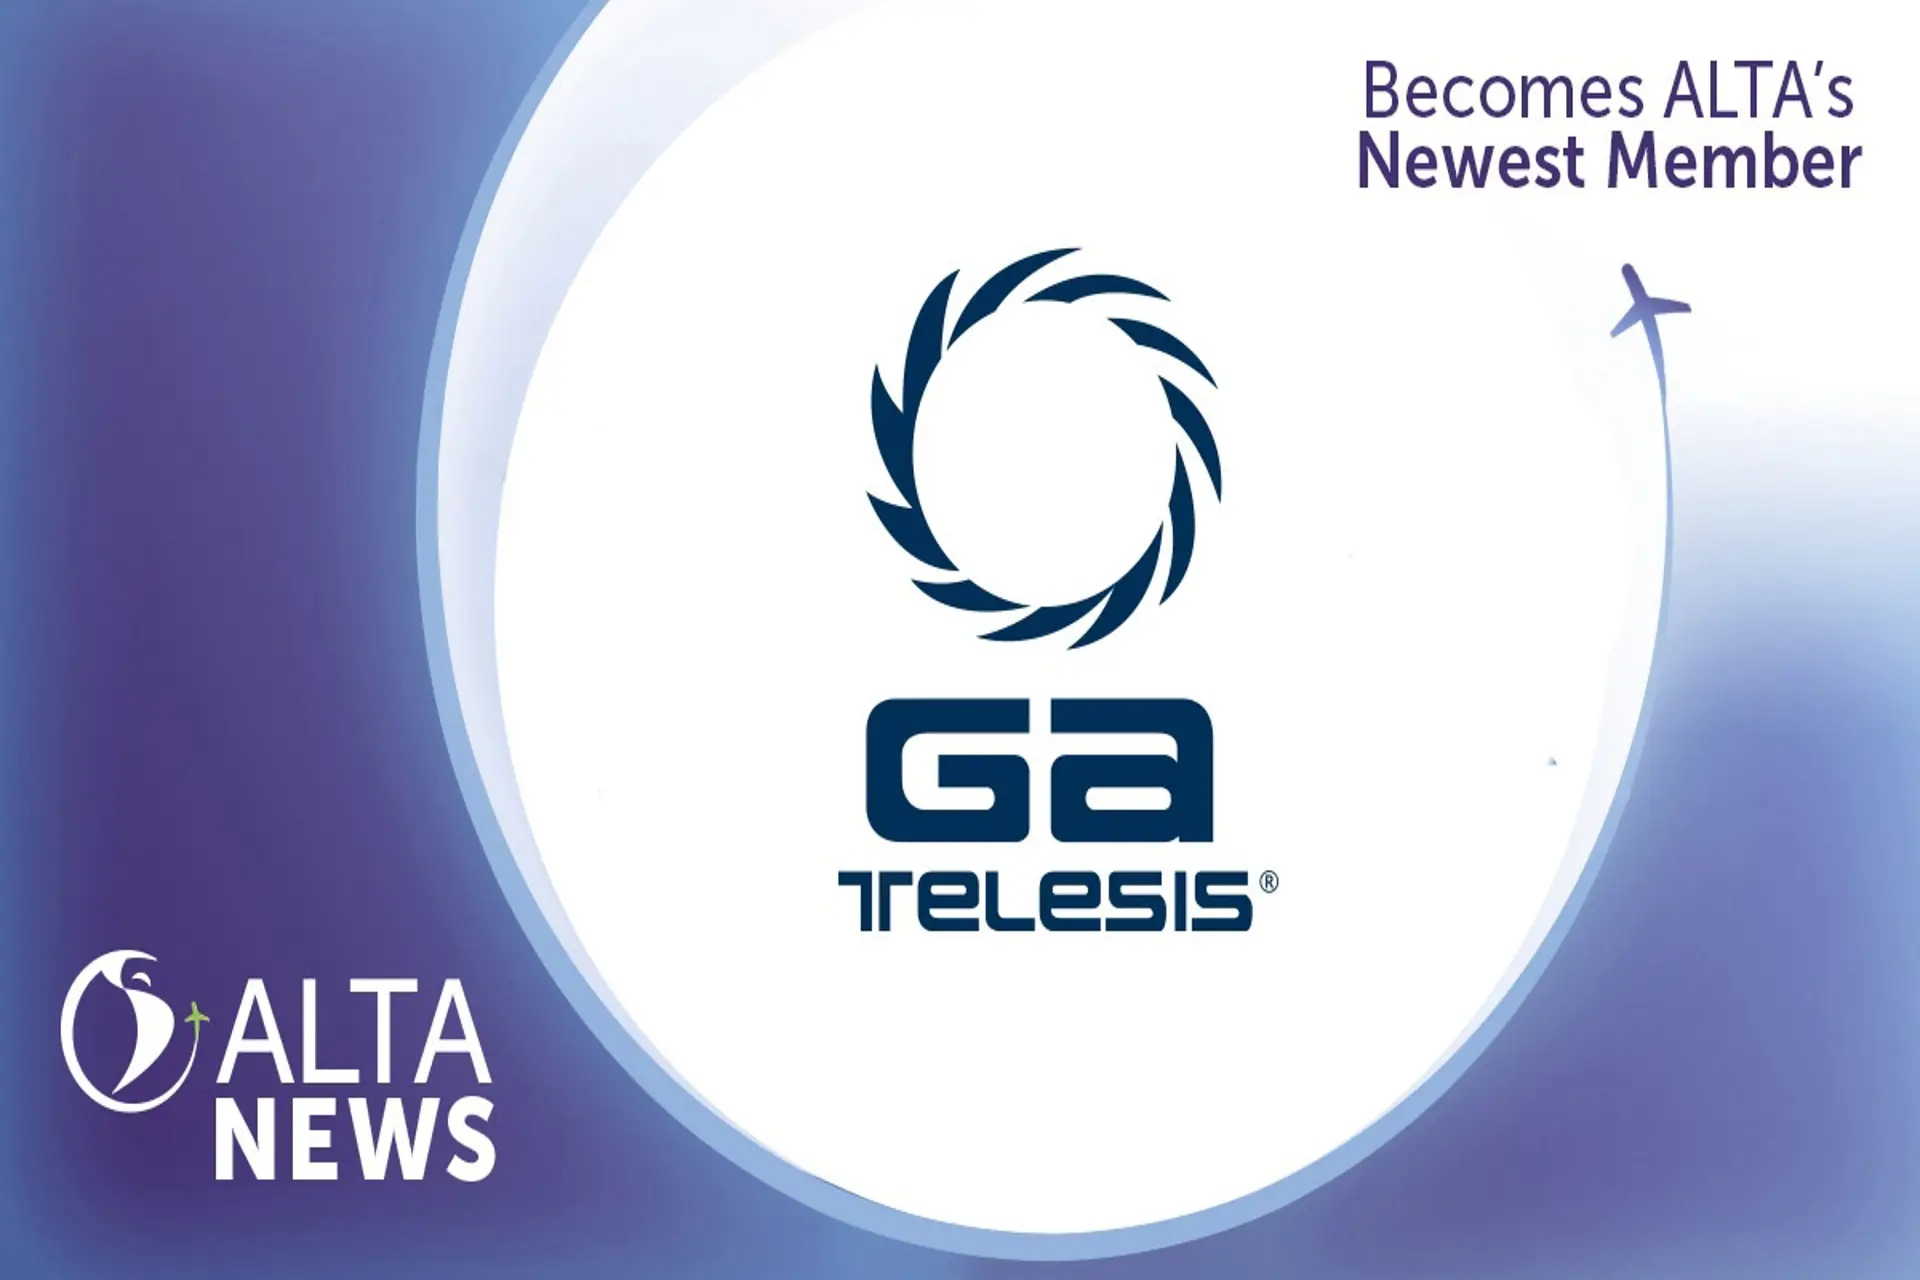  GA Telesis contribuirá al crecimiento regional al unirse a ALTA 